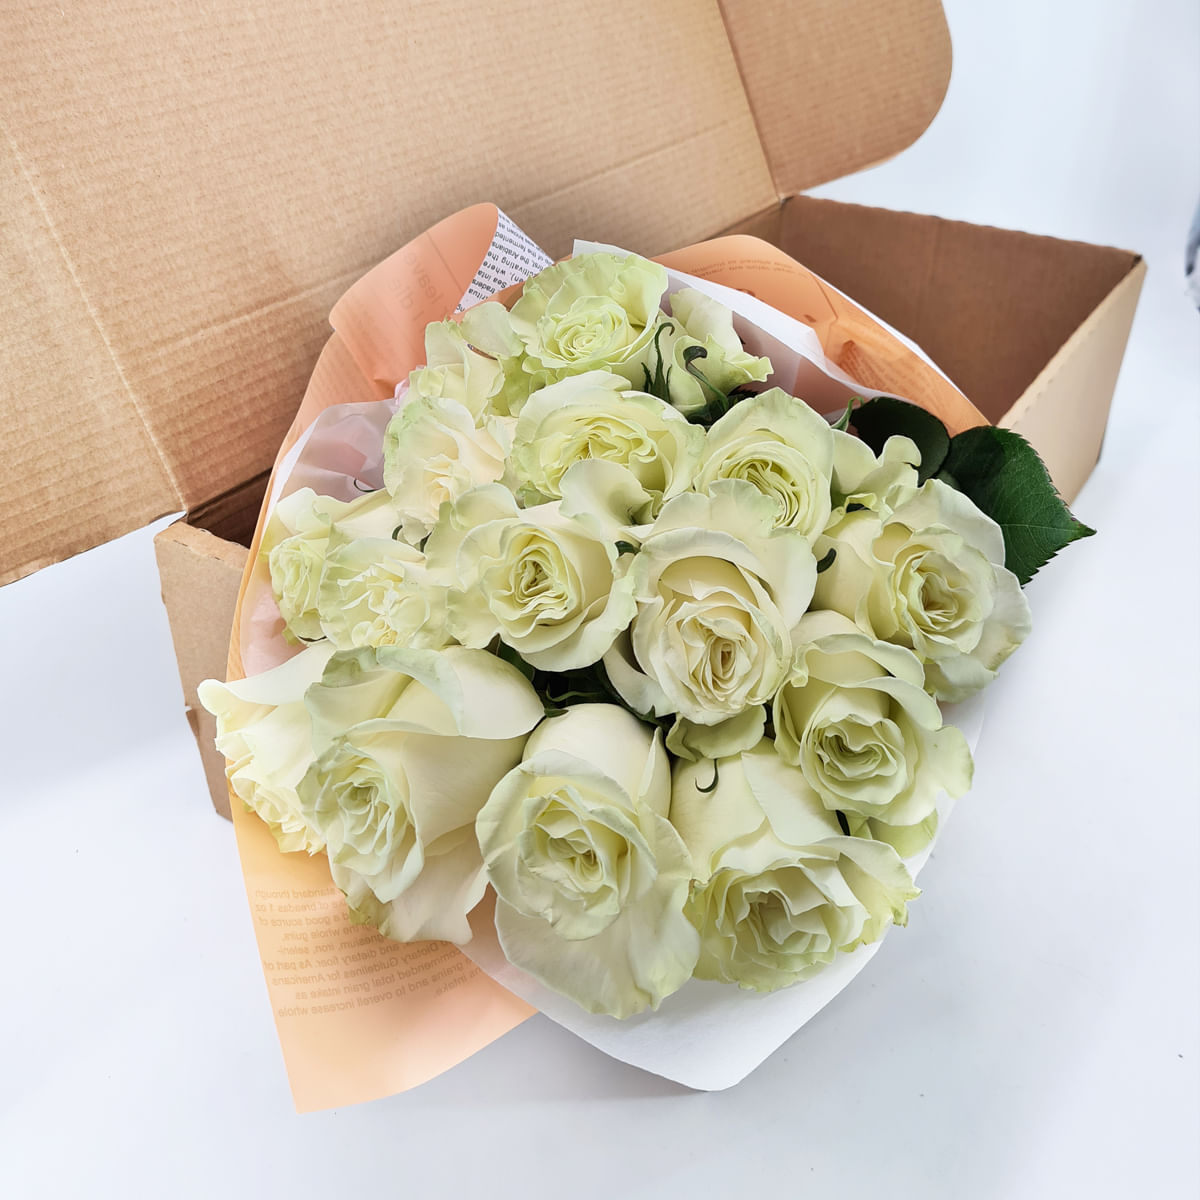 Buchet de 15 trandafiri albi in cutie Buchet de 15 trandafiri albi in cutie albi imagine 2022